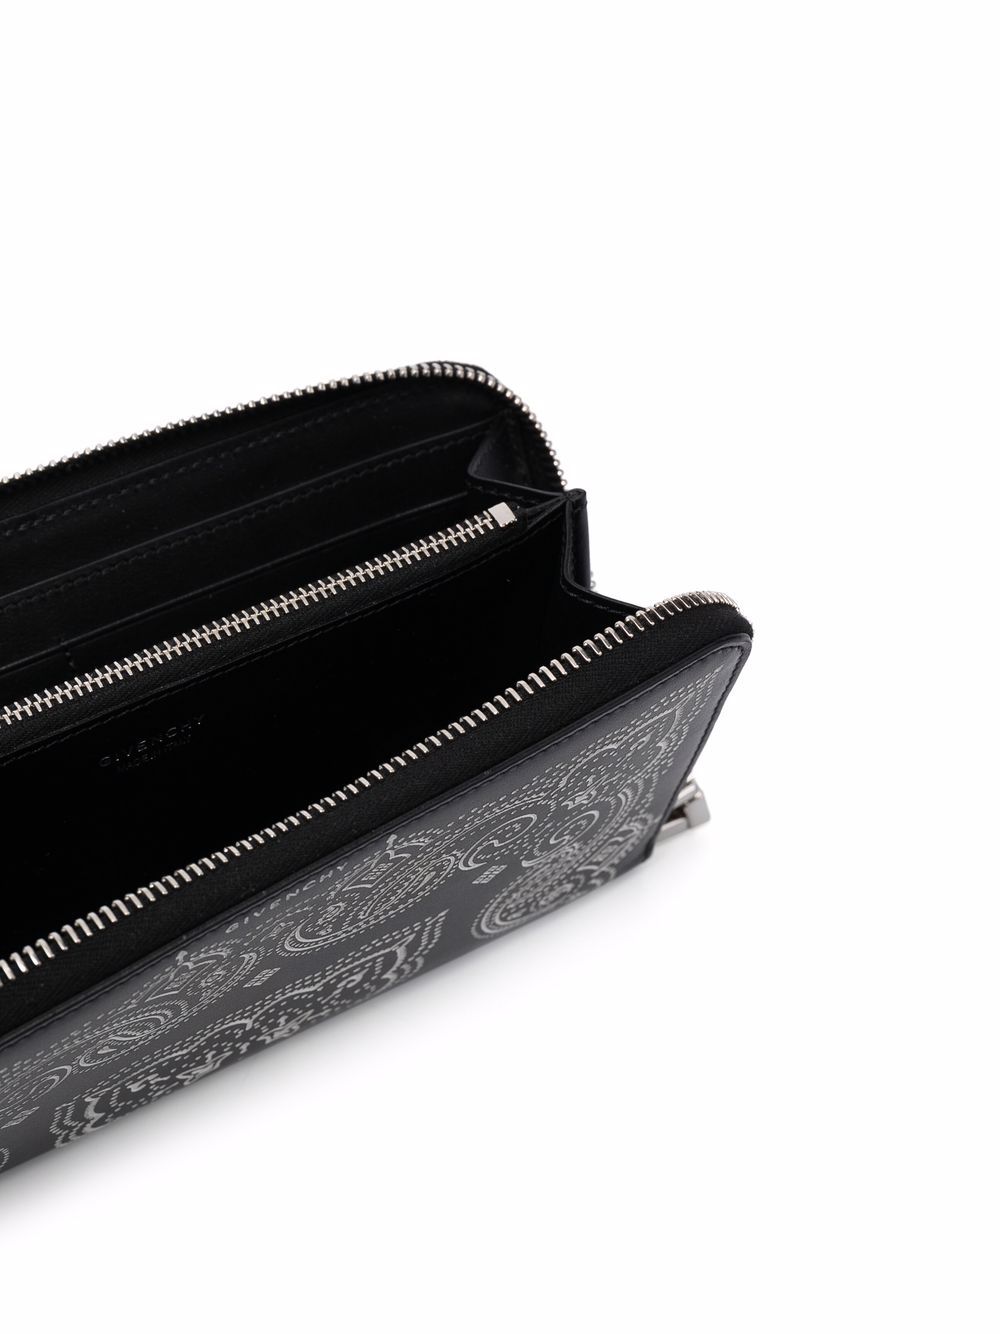 фото Givenchy кошелек с принтом